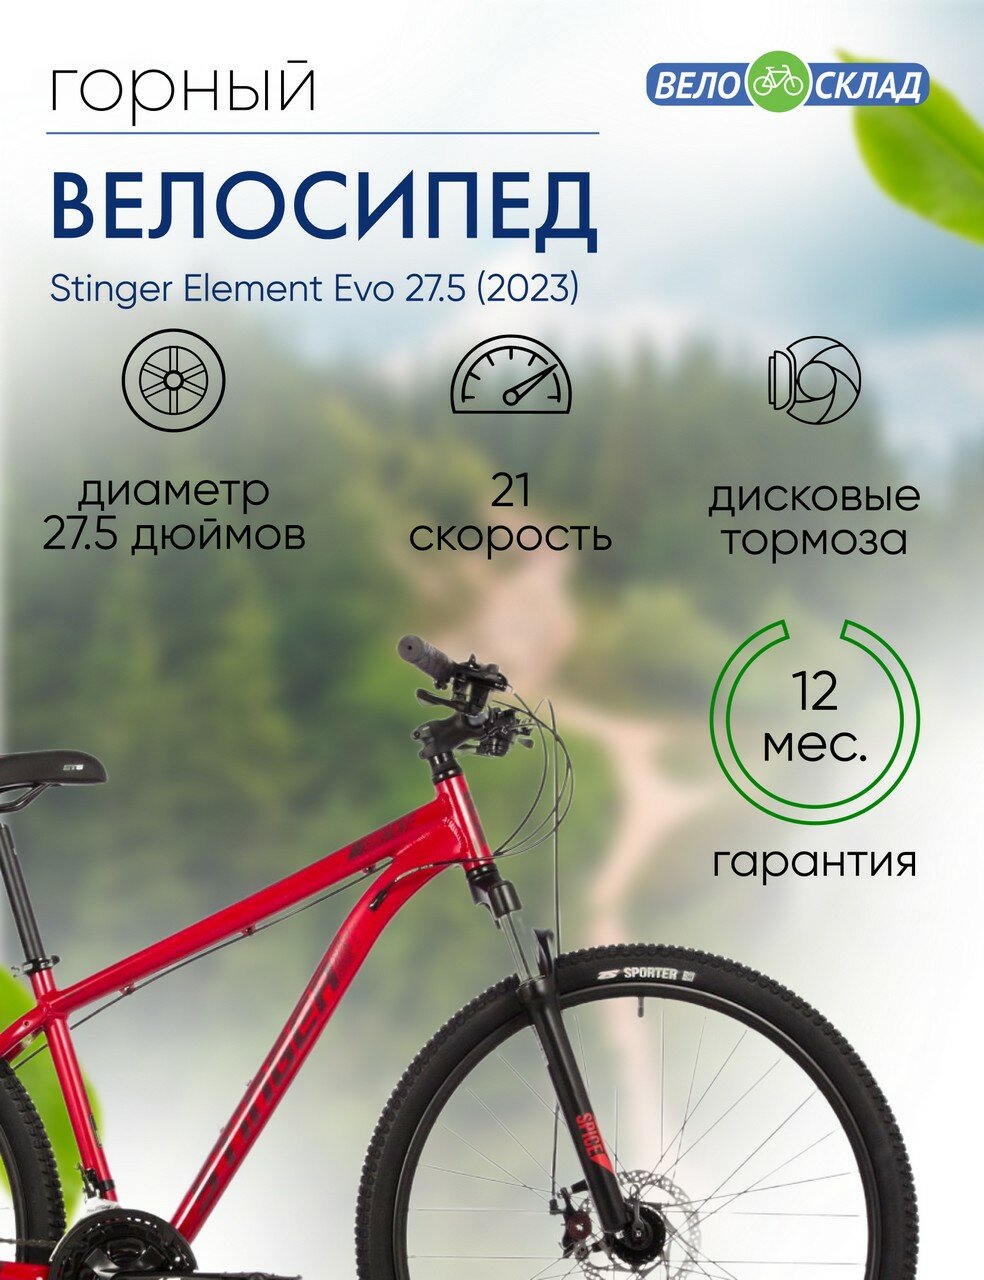 Горный велосипед Stinger Element Evo 27.5, год 2023, цвет Красный, ростовка 20